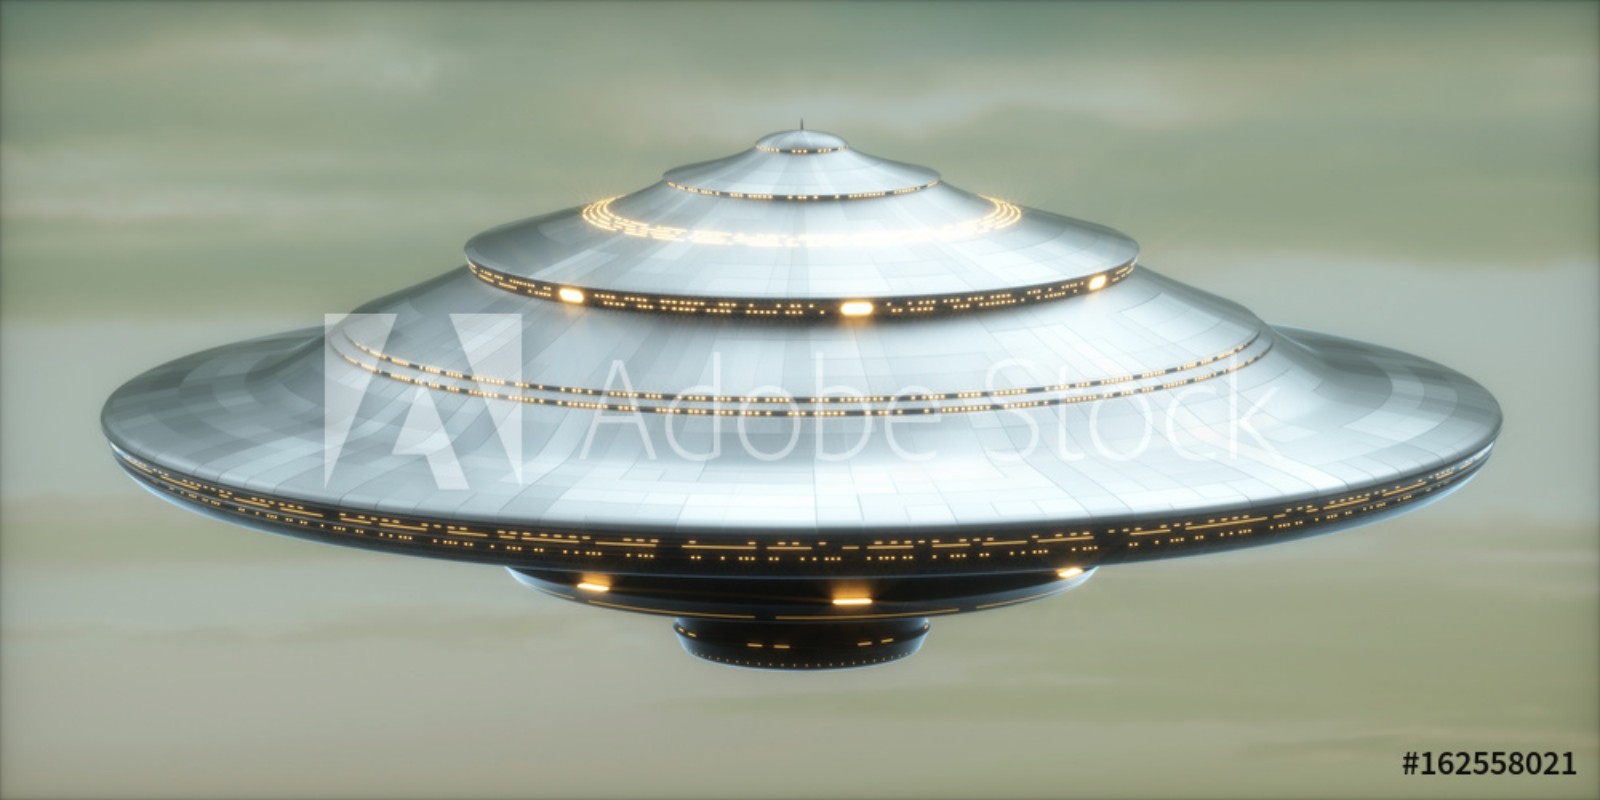 Afbeeldingen van UFO Alien Spaceship  Clipping Path Included